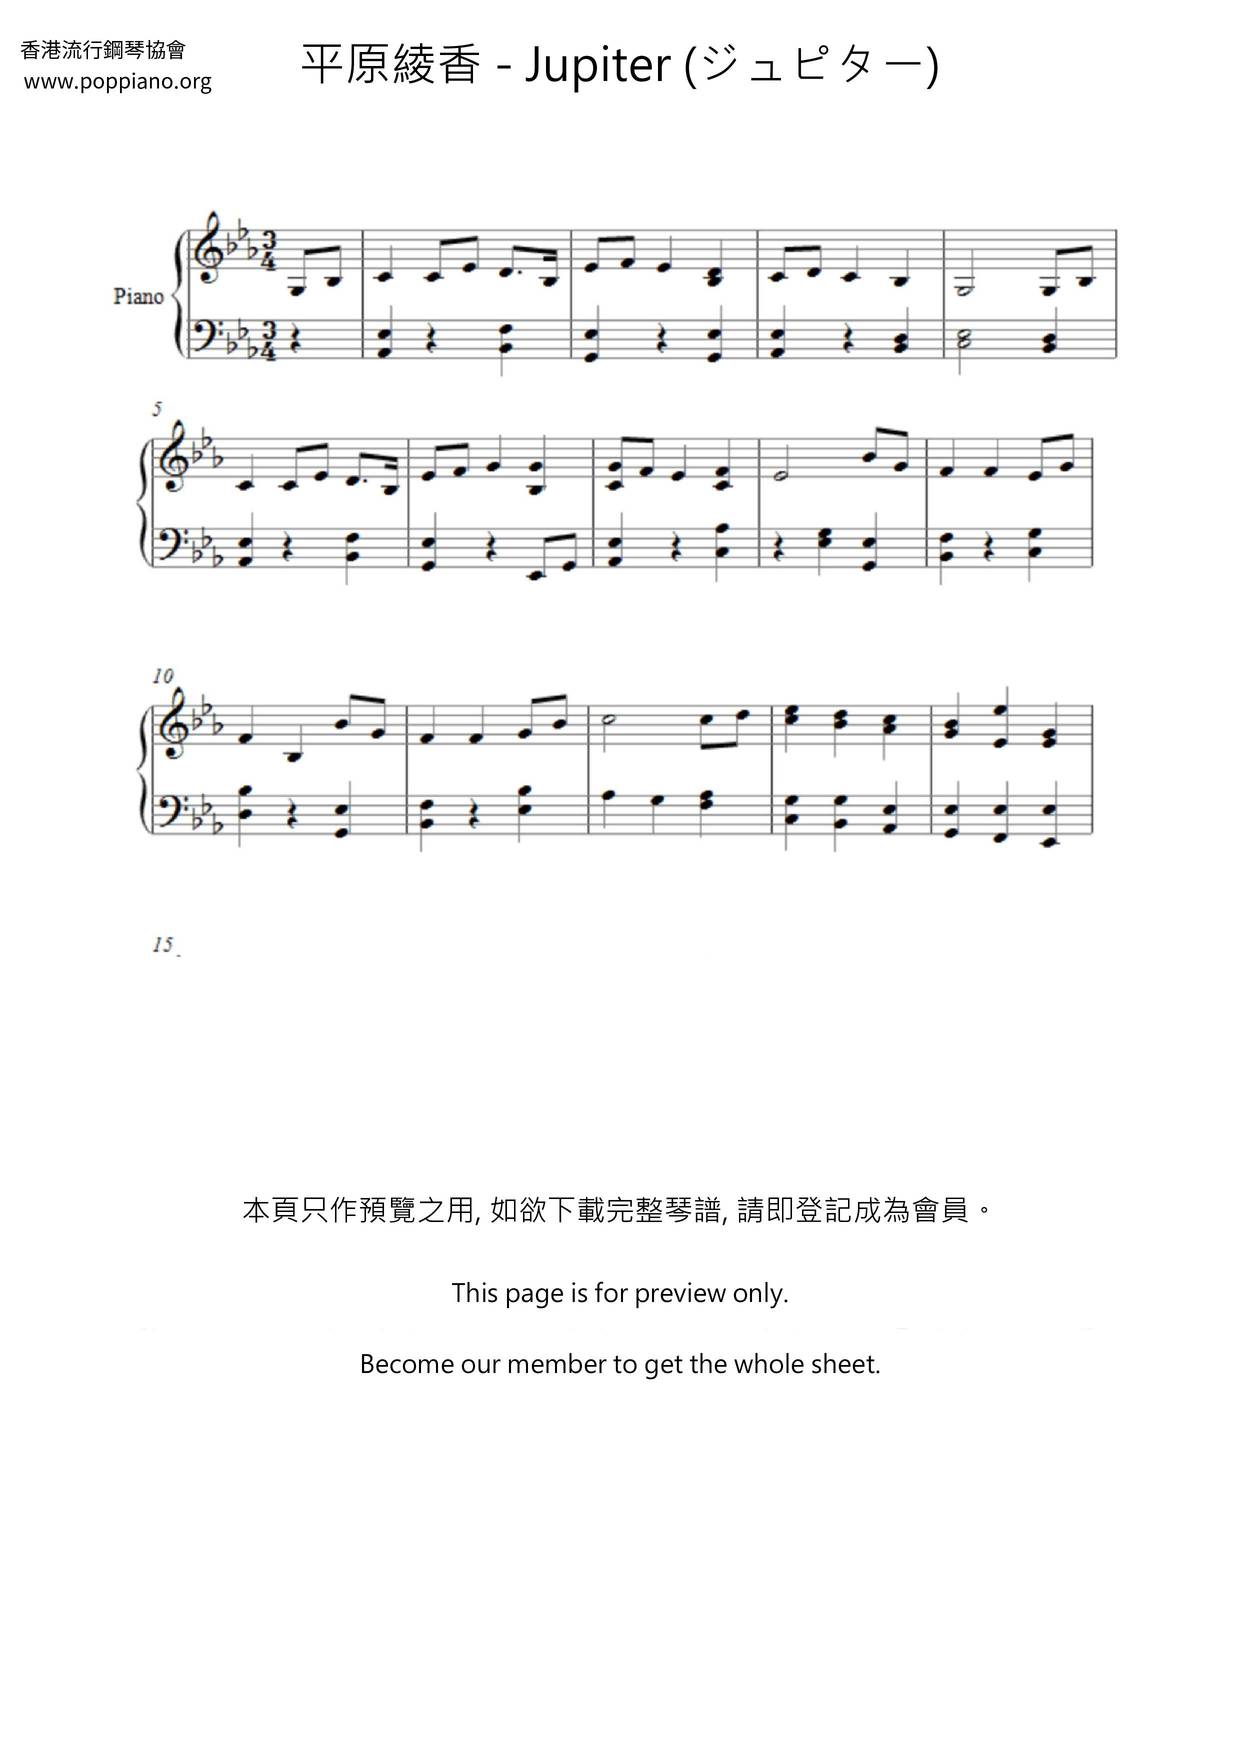 平原綾香 Jupiter ジュピター ピアノ譜pdf 香港ポップピアノ協会 無料pdf楽譜ダウンロード Gakufu